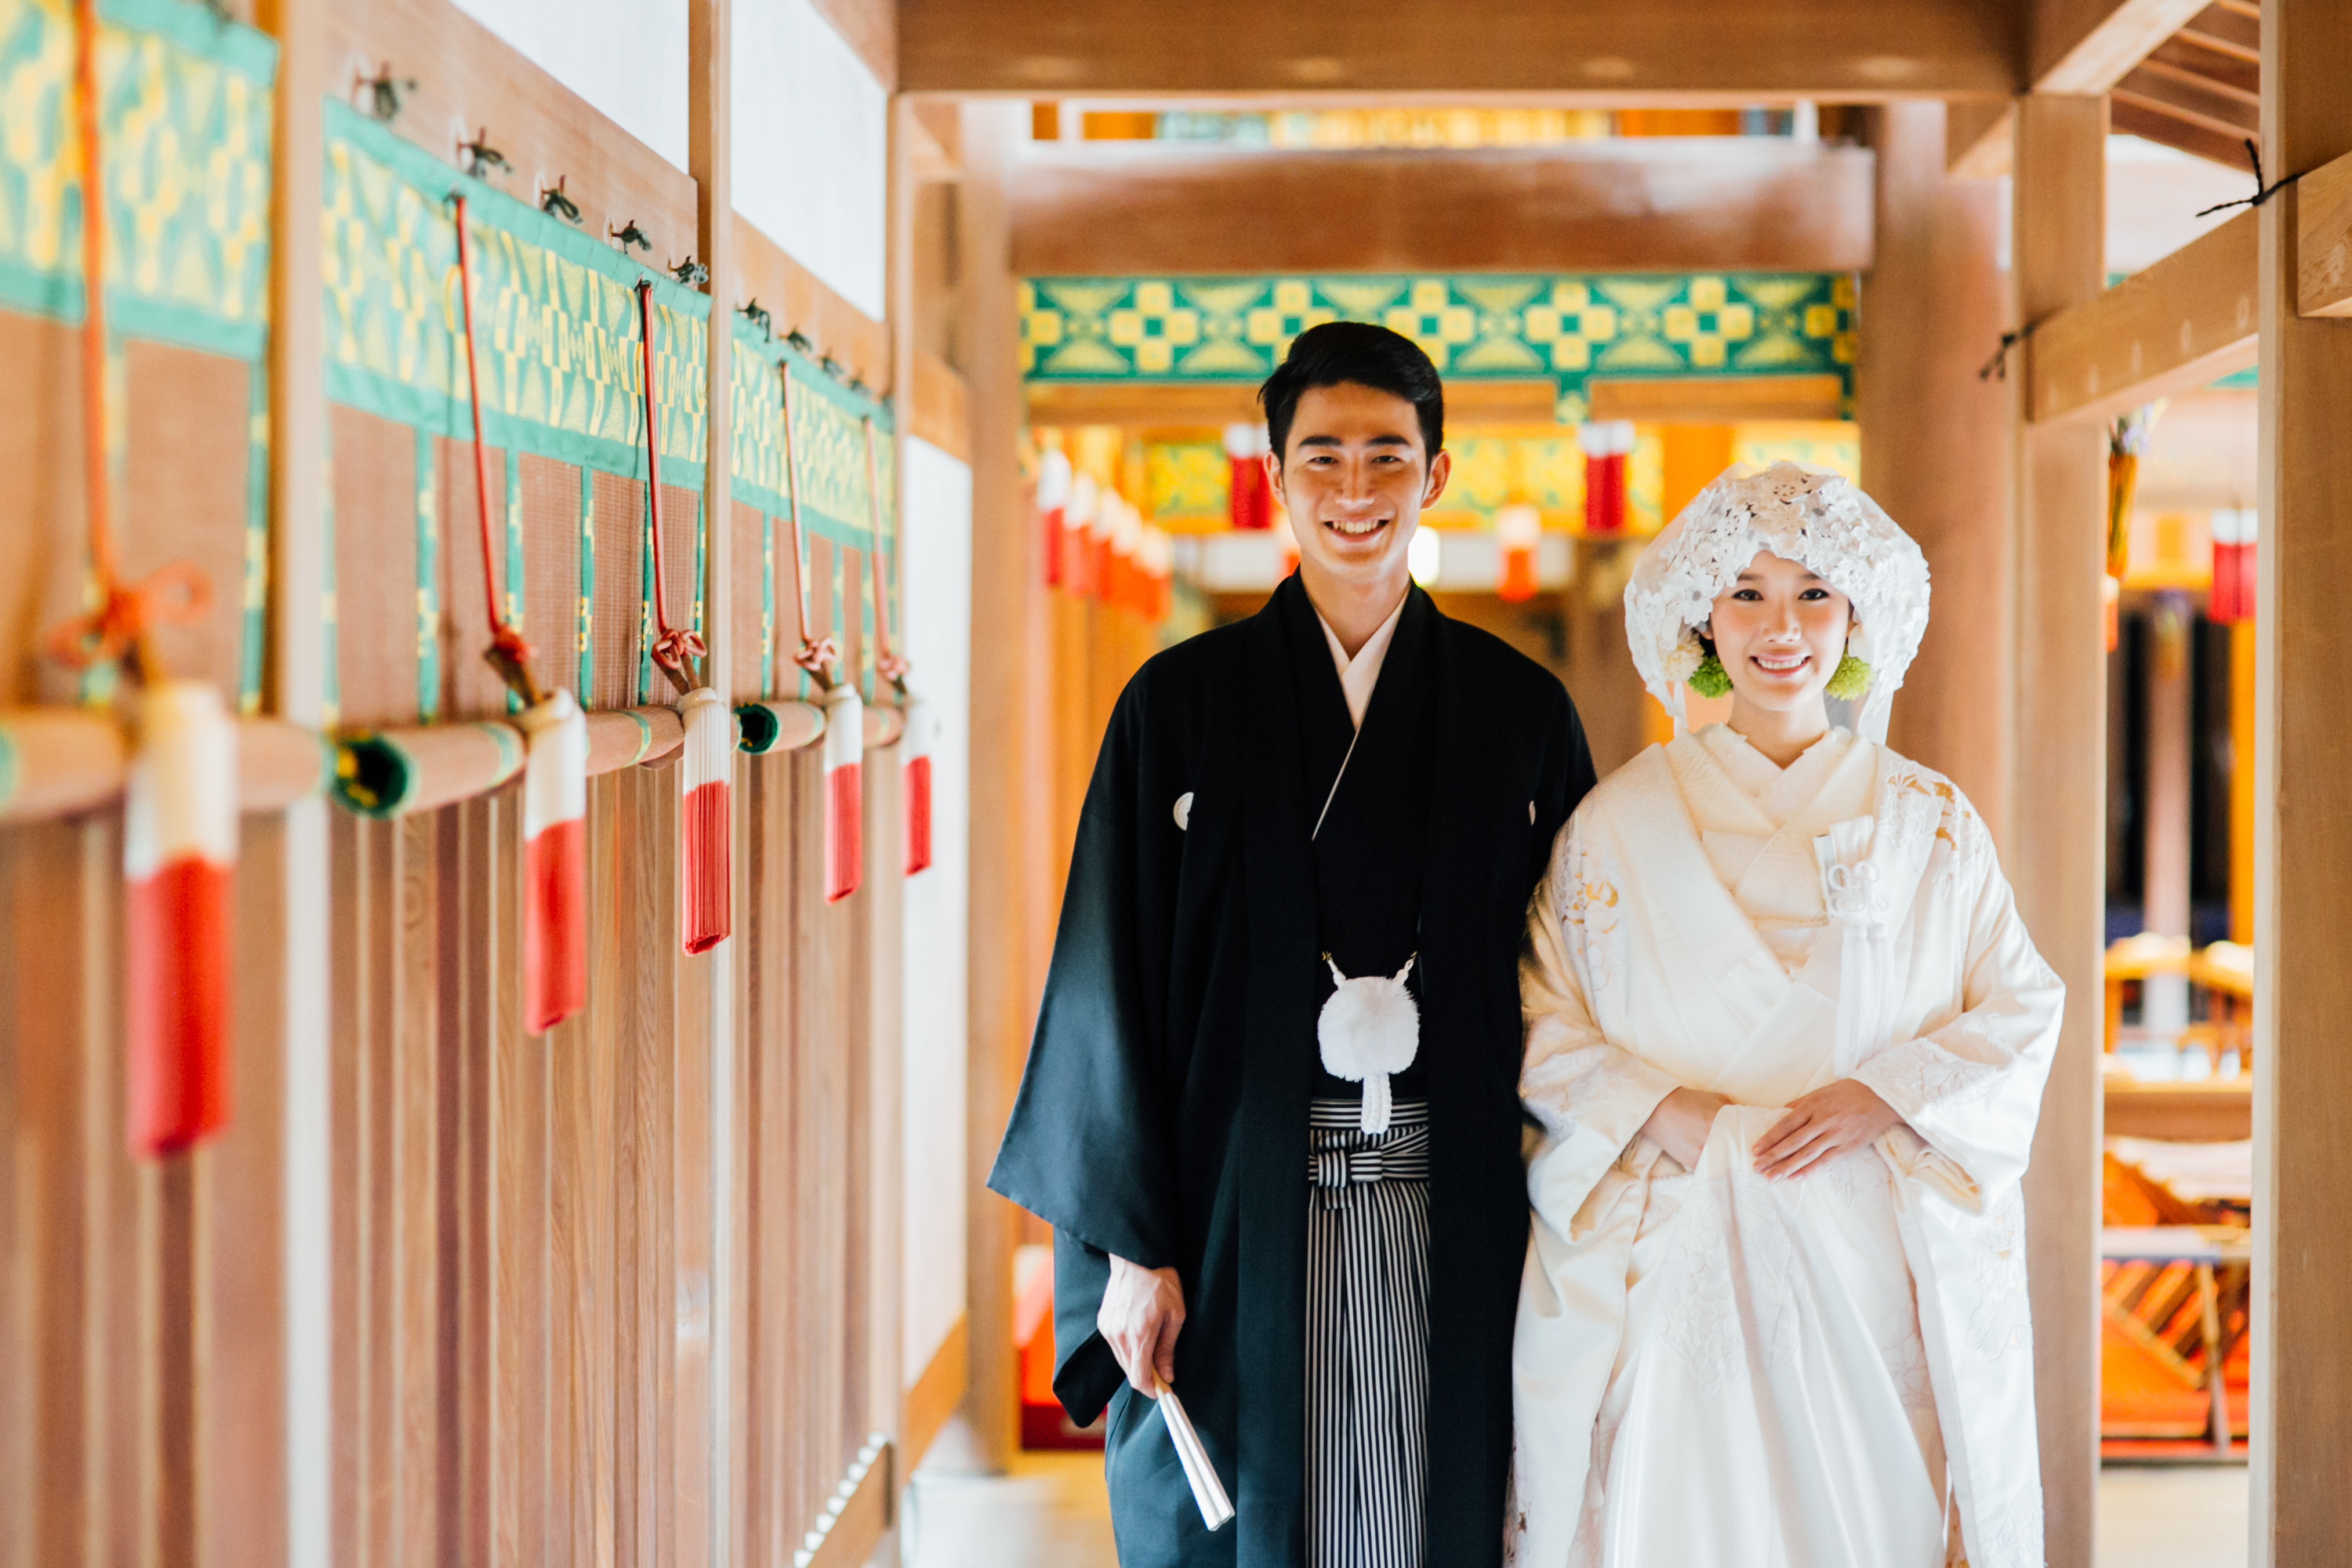 赤坂 乃木神社でwithコロナ時代の新婚礼プラン みやび株式会社のプレスリリース